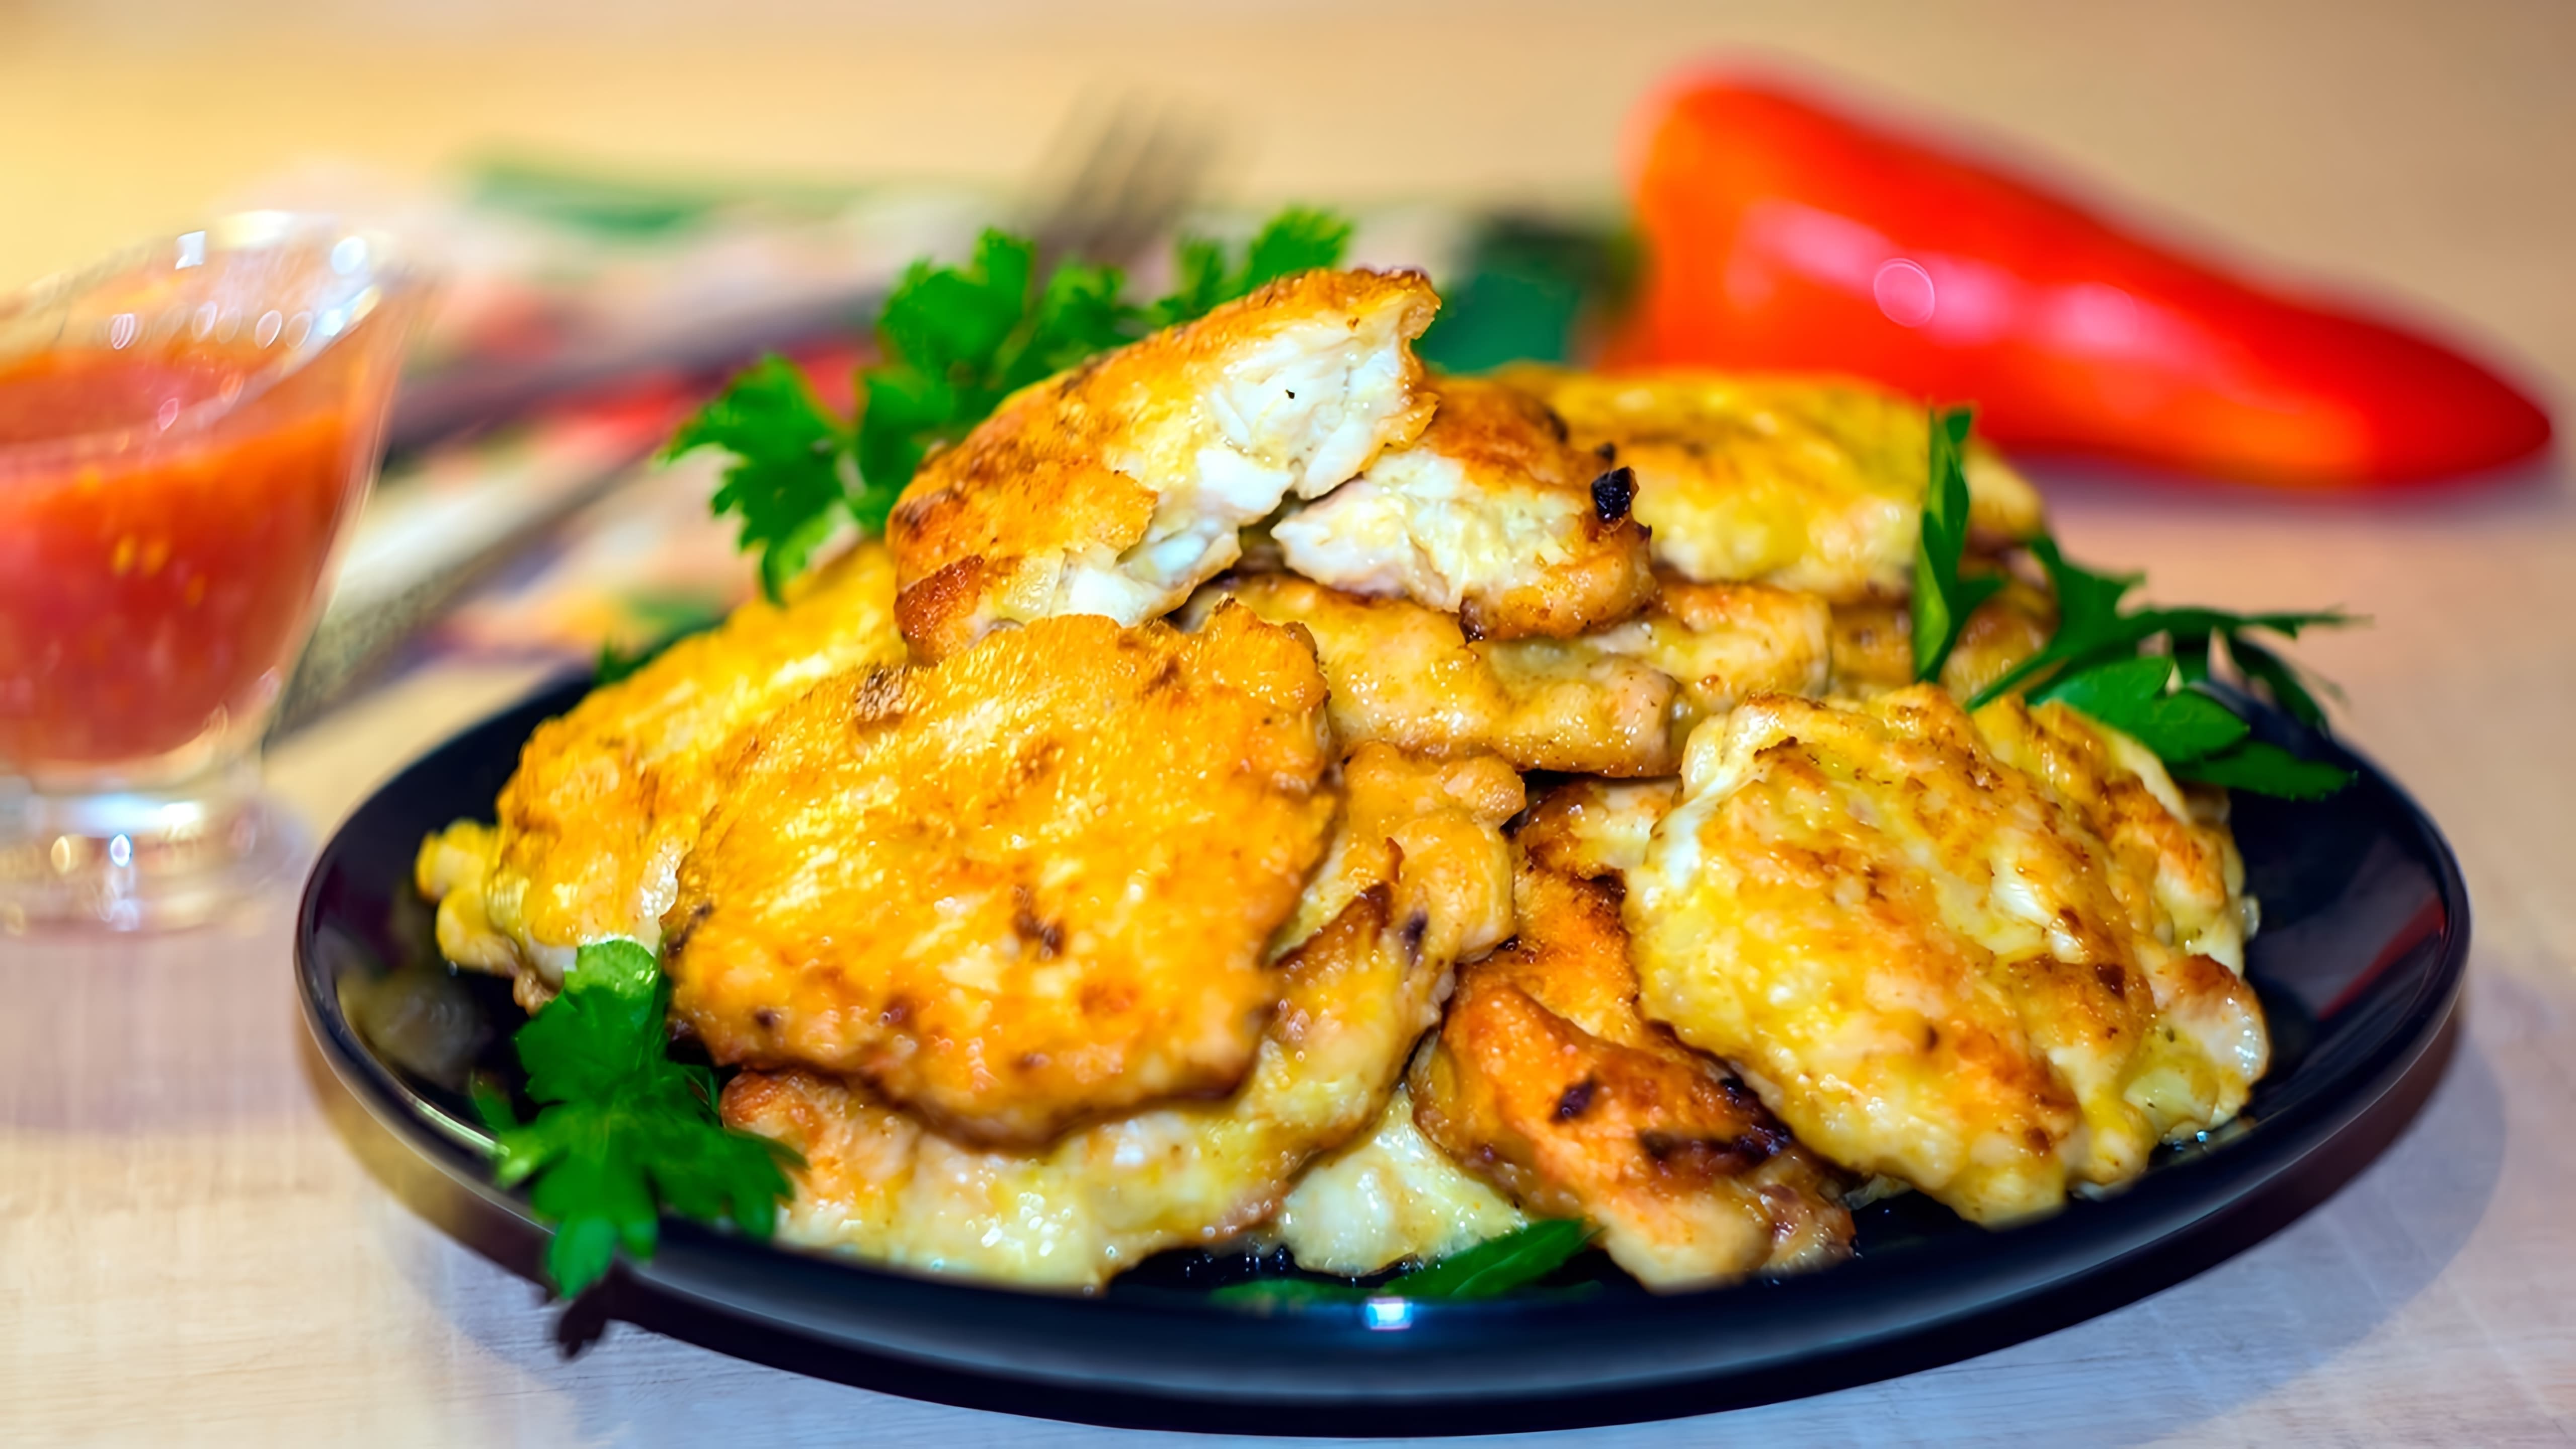 В этом видео-ролике будет представлен рецепт приготовления вкусного и полезного блюда - мяса по-албански из курицы